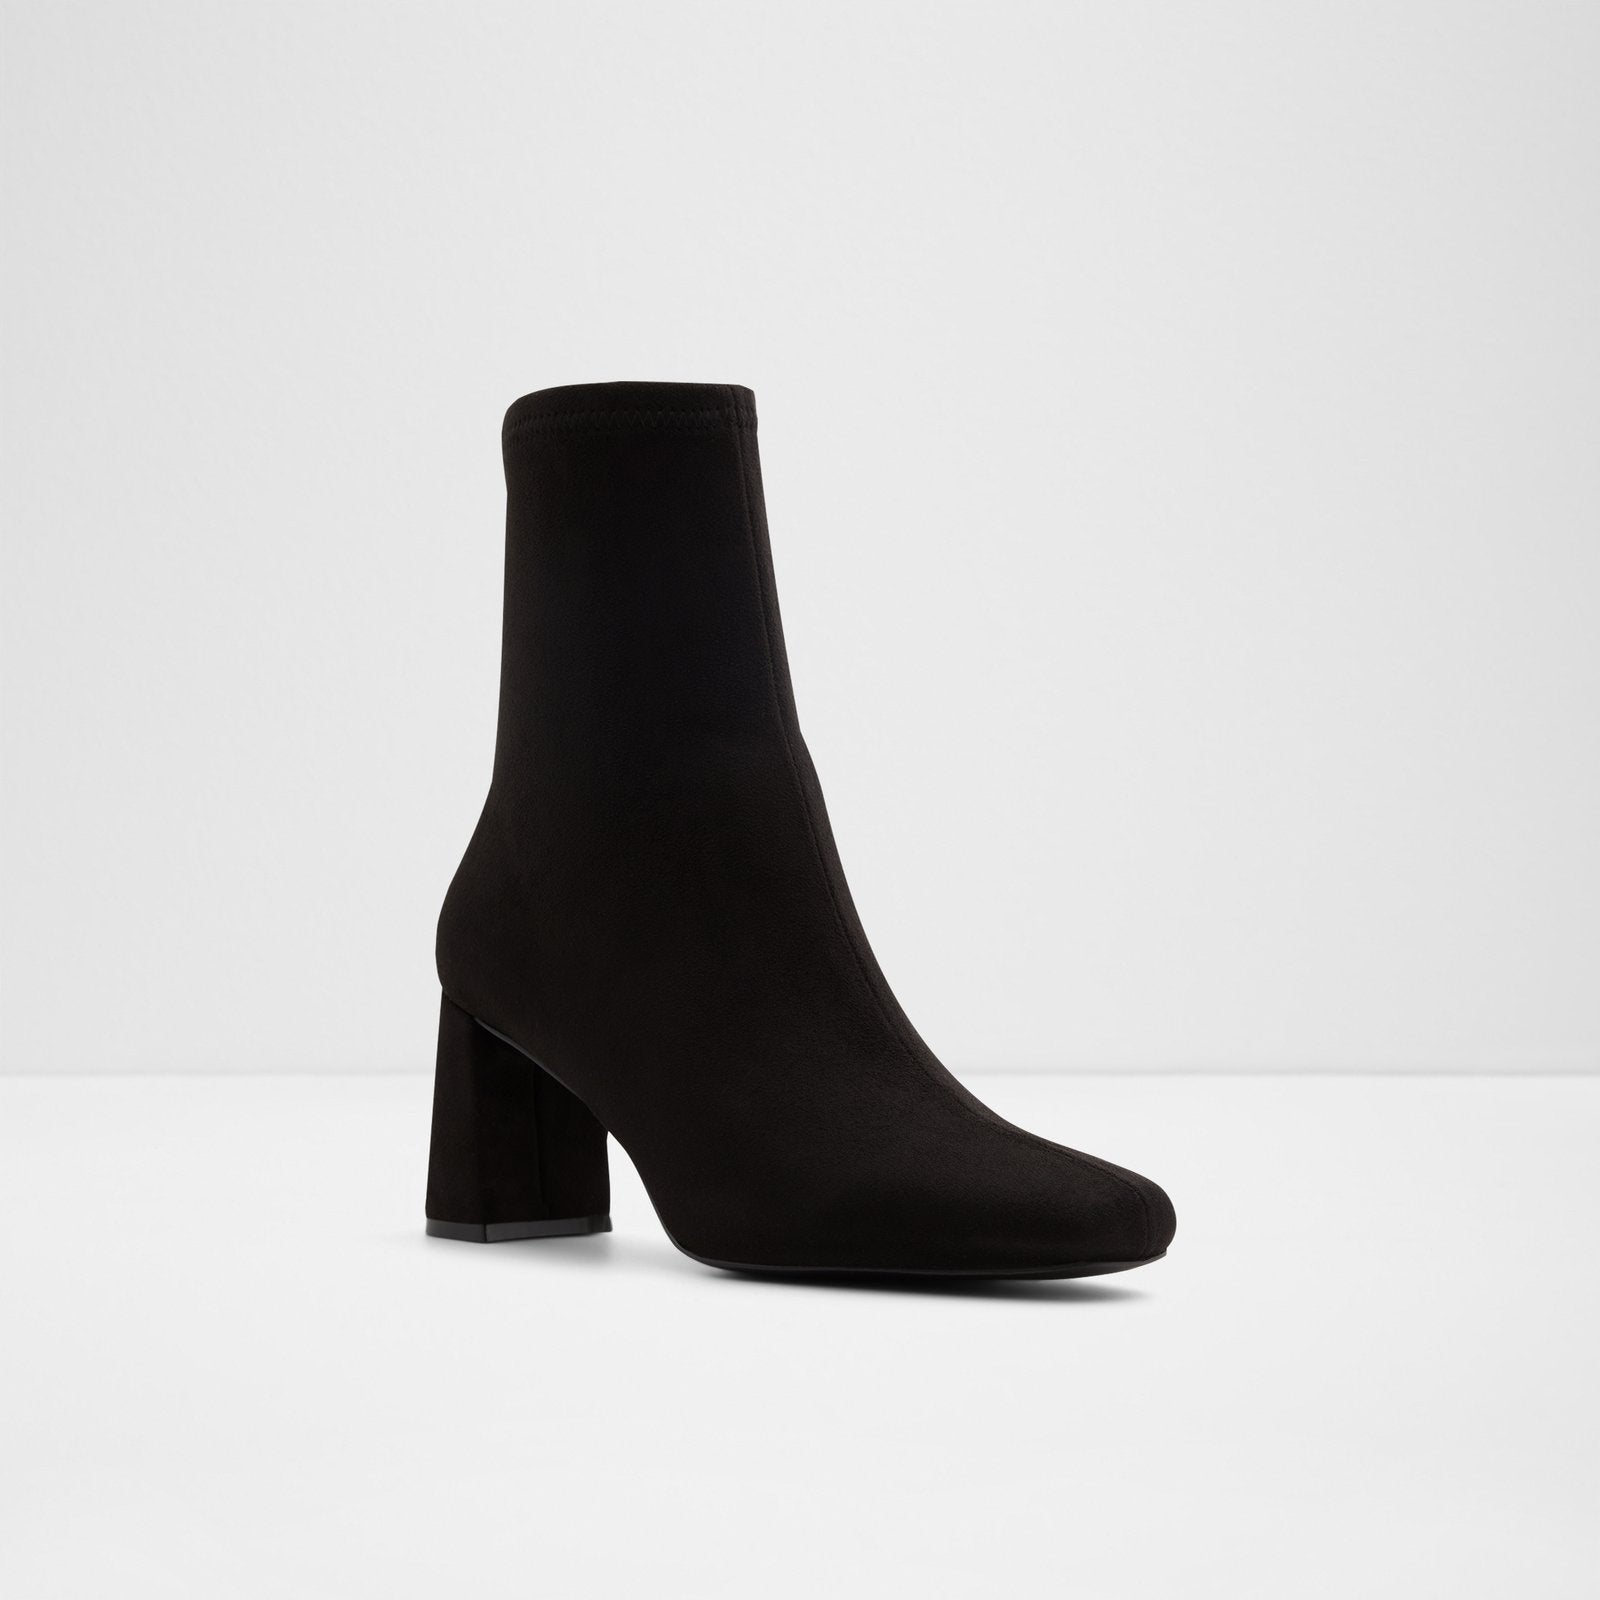 Women's Ankle Boots Marcella (Black/Black) Shoes